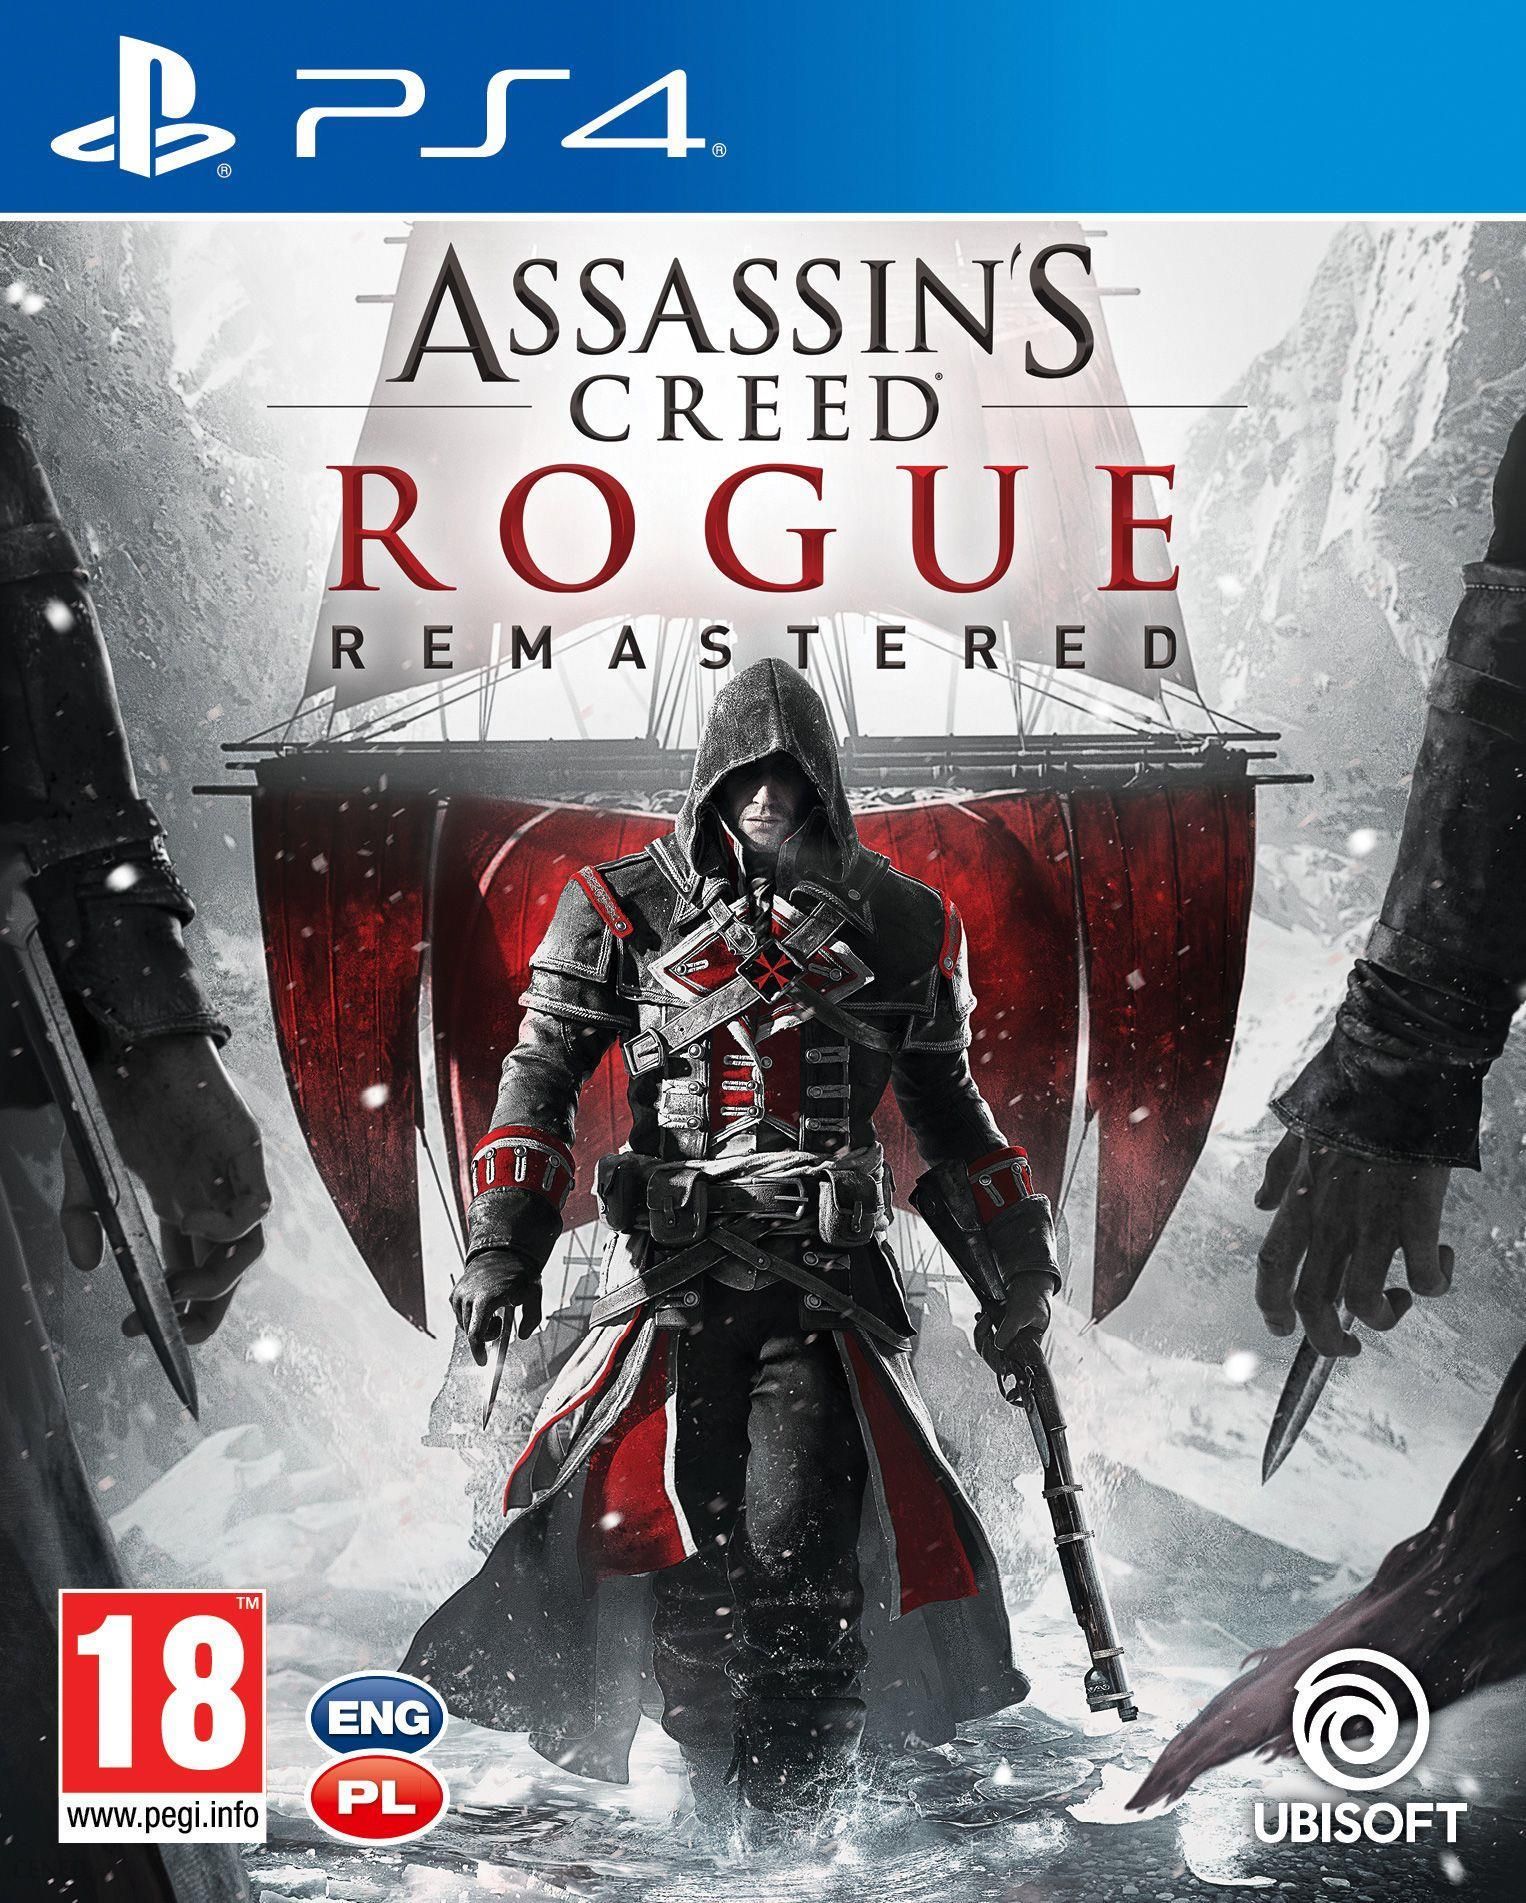 Assassins Creed 3 problemy z dopasowywaniem